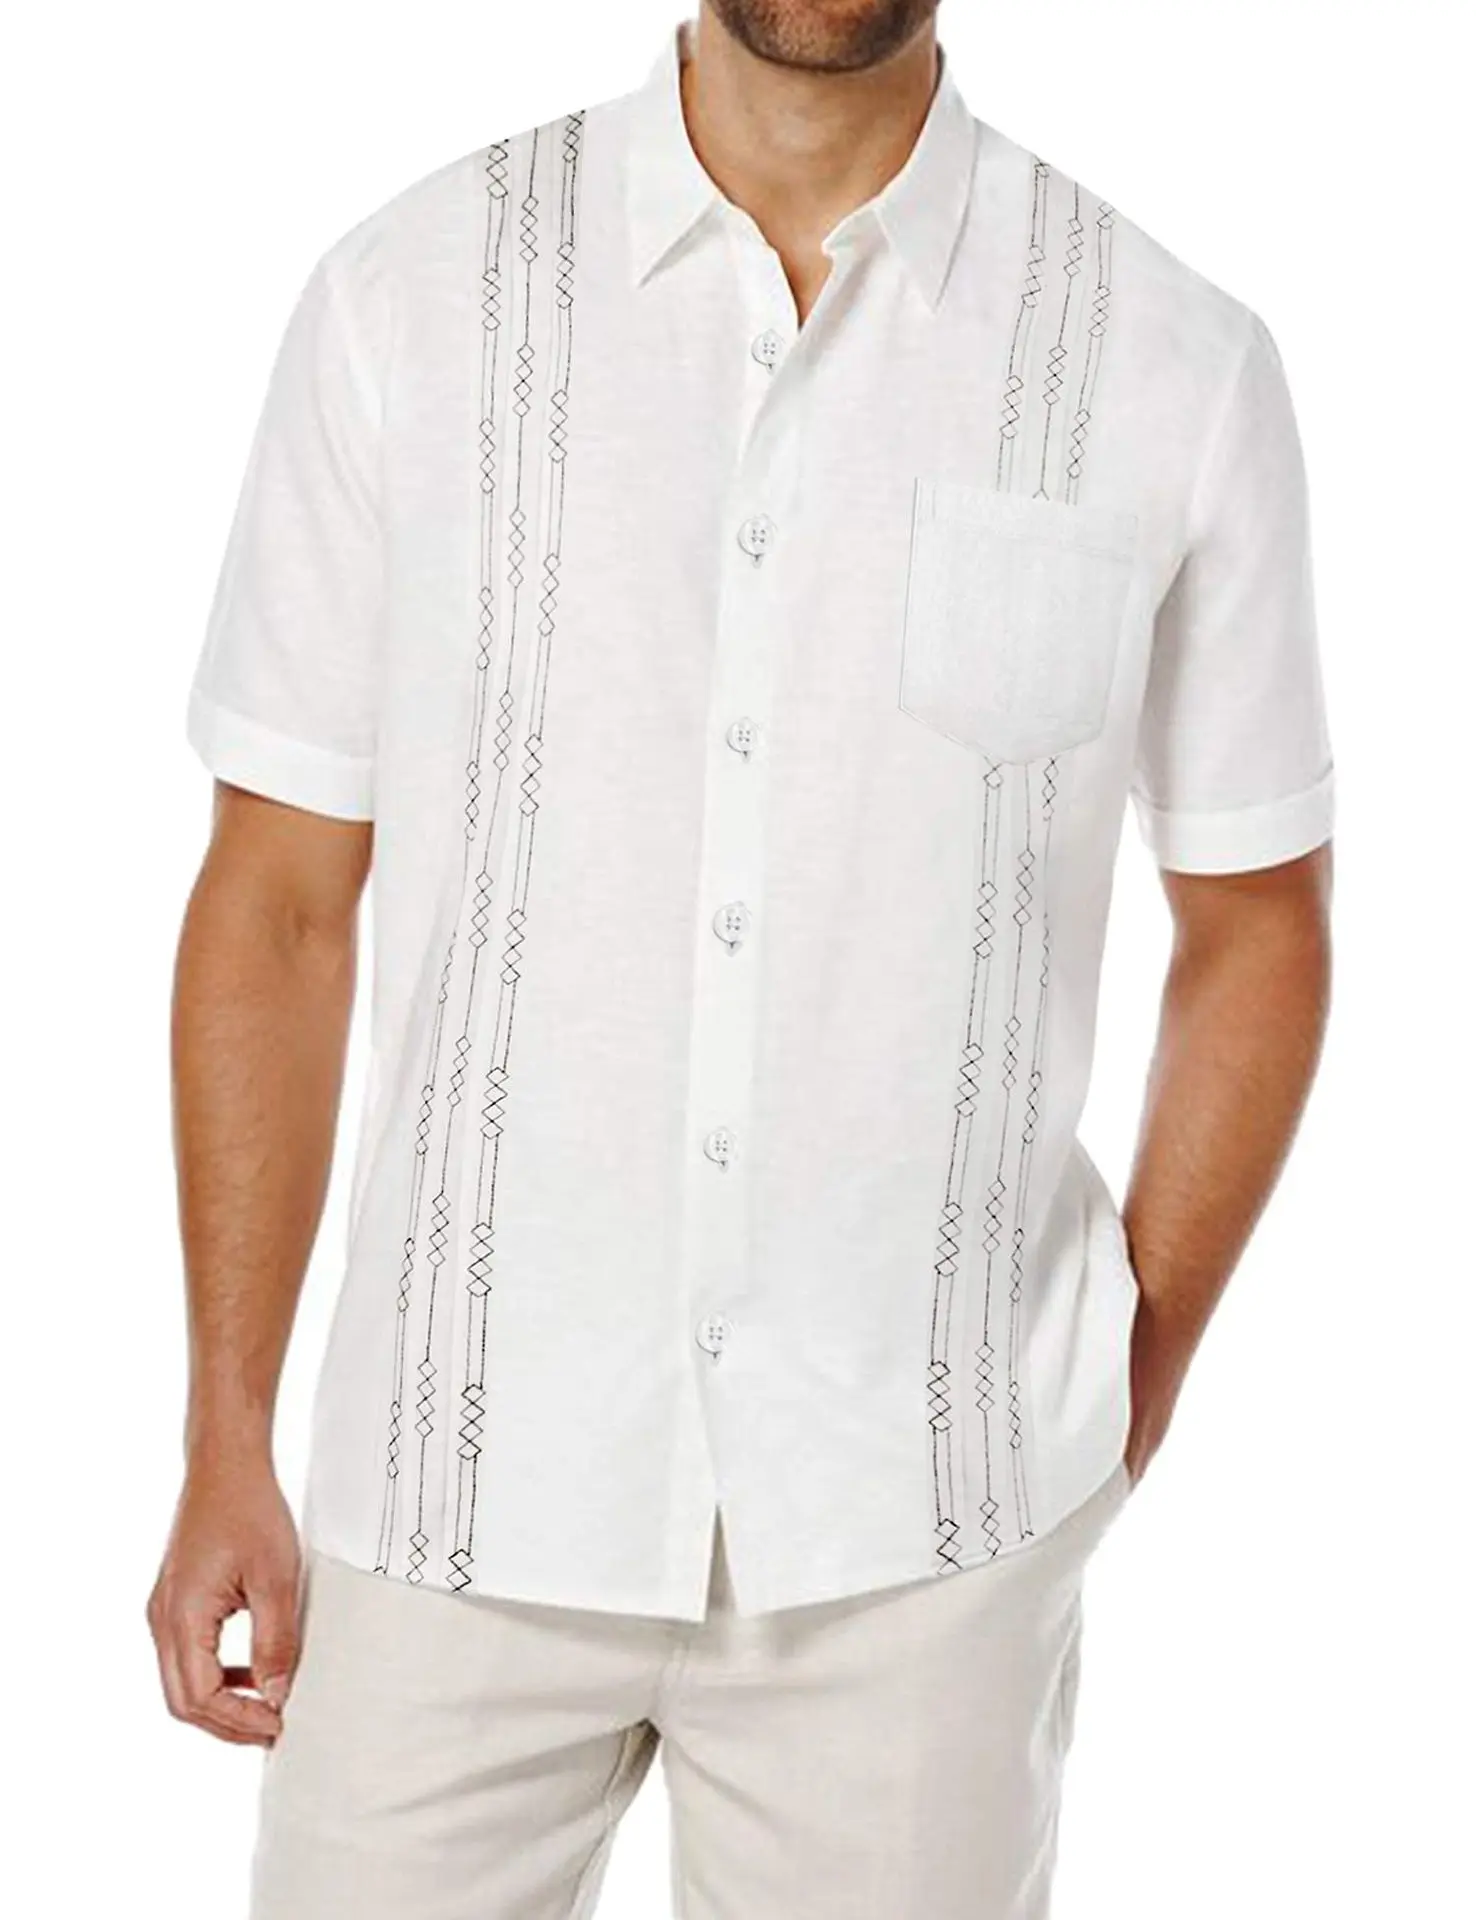 Hot Sale High Quaility Men's Short Sleeved Linen Shirt Cuban Beach Top Pocket Guayabella Shirt Men Top